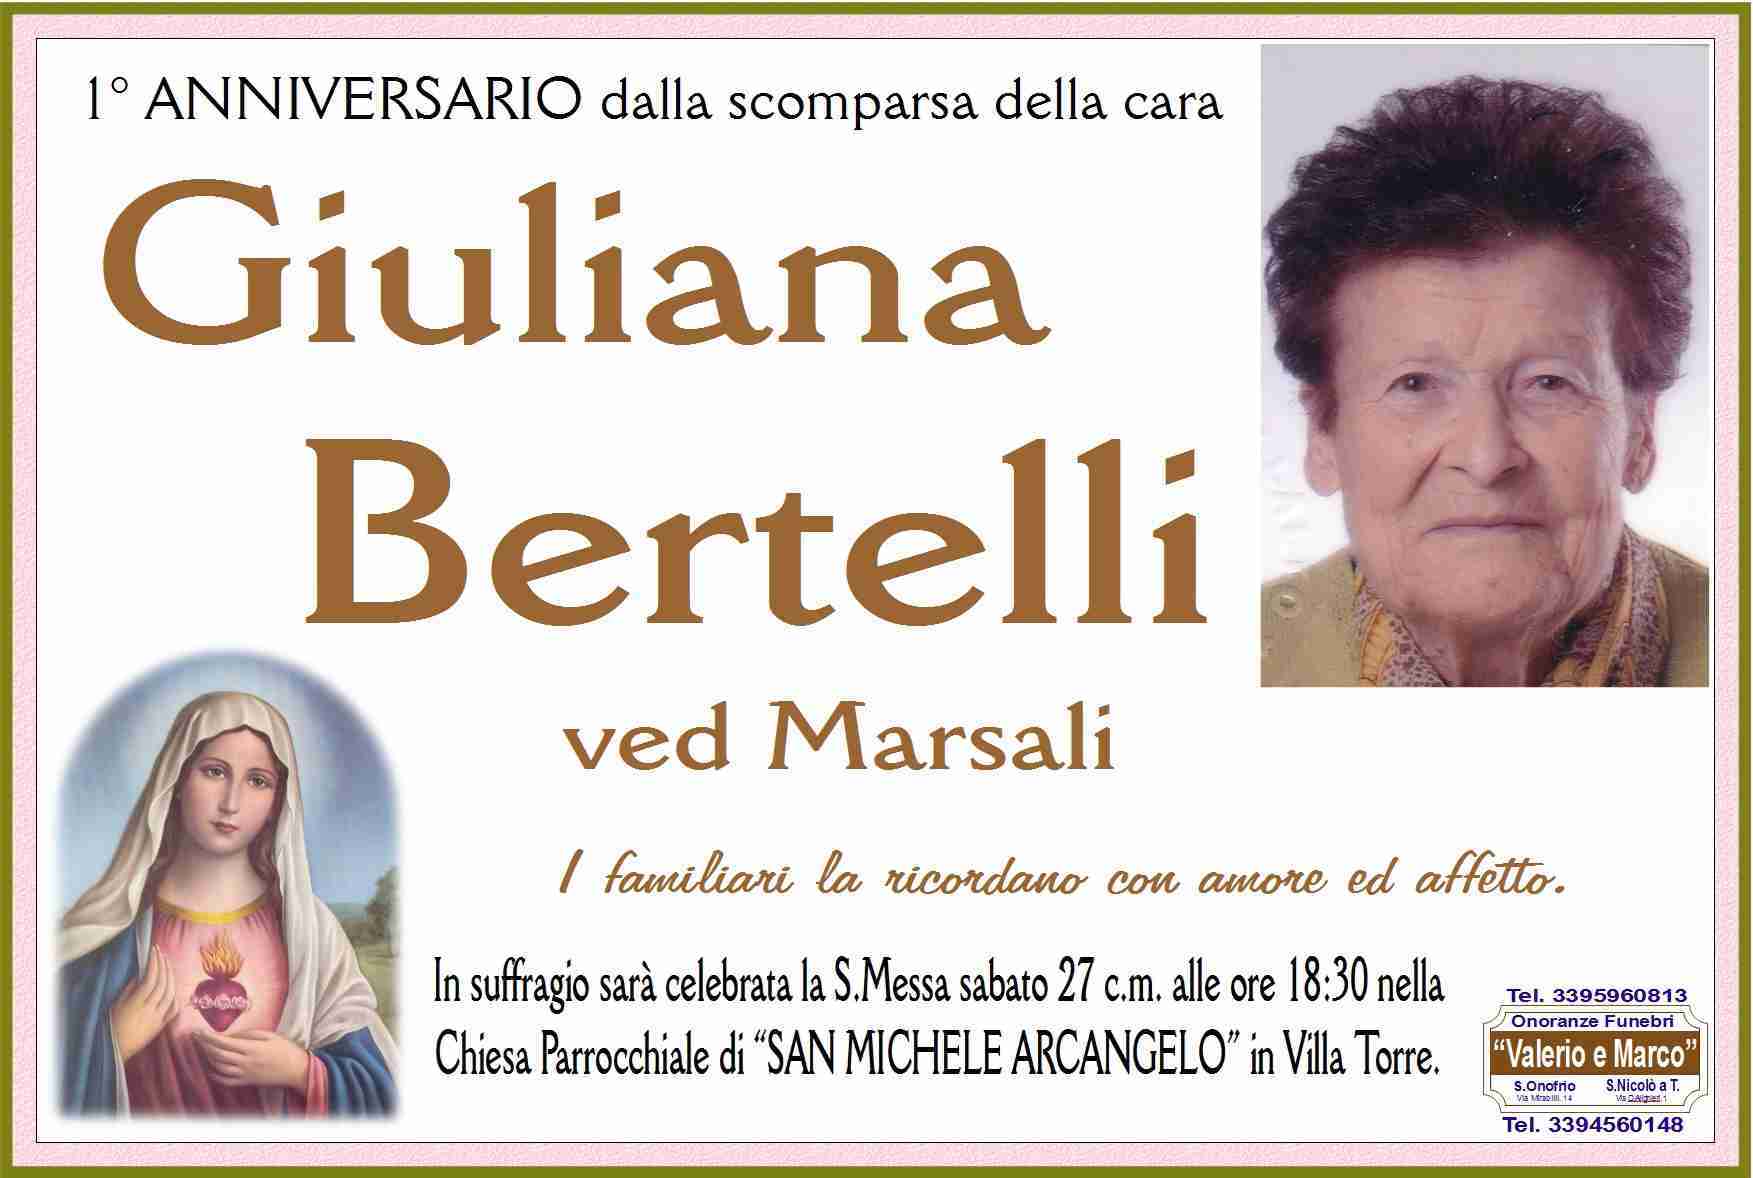 Giuliana Bertelli